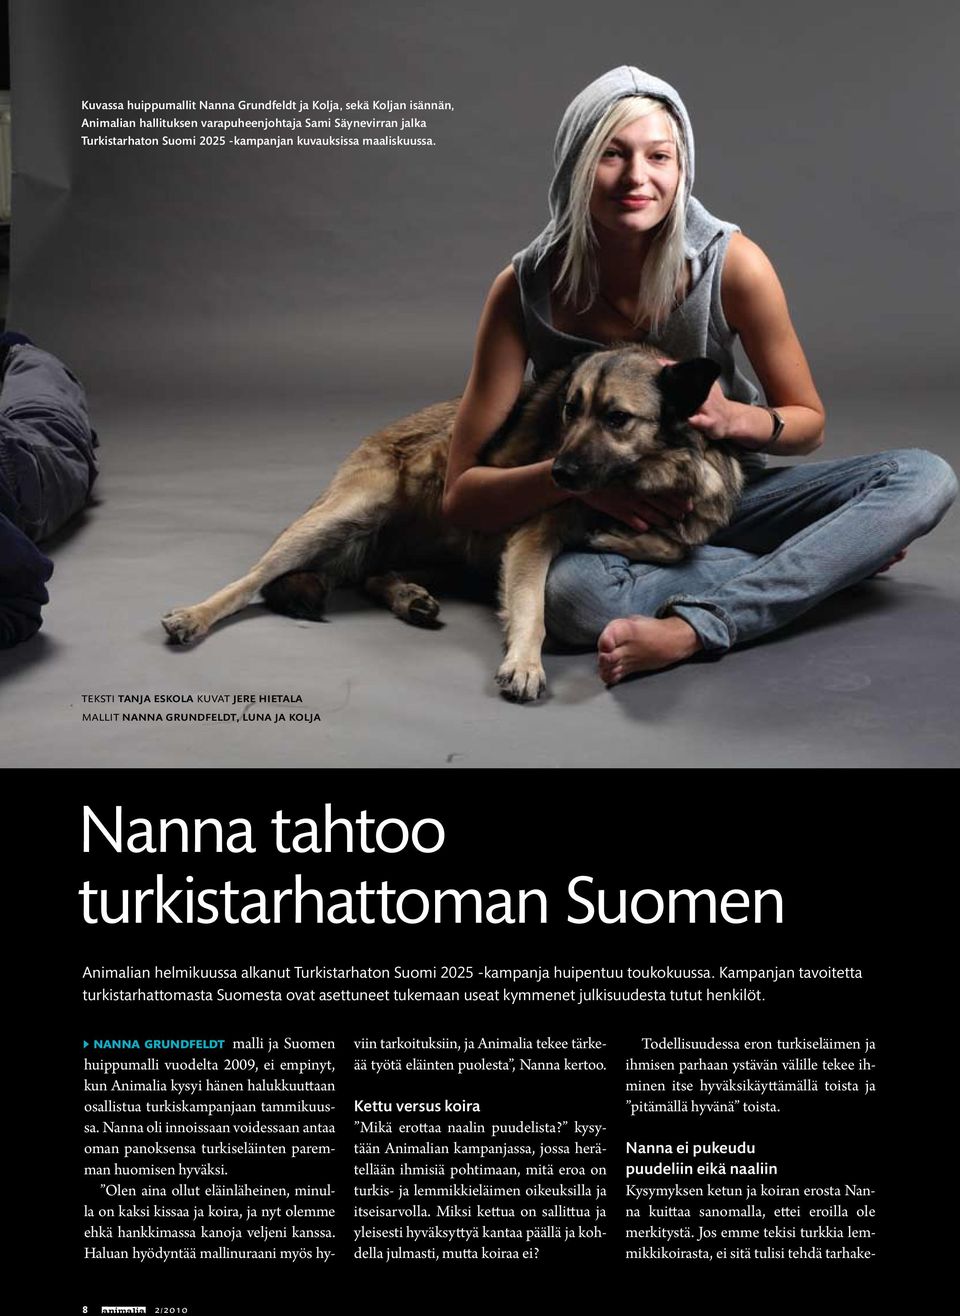 toukokuussa. Kampanjan tavoitetta turkistarhattomasta Suomesta ovat asettuneet tukemaan useat kymmenet julkisuudesta tutut henkilöt.